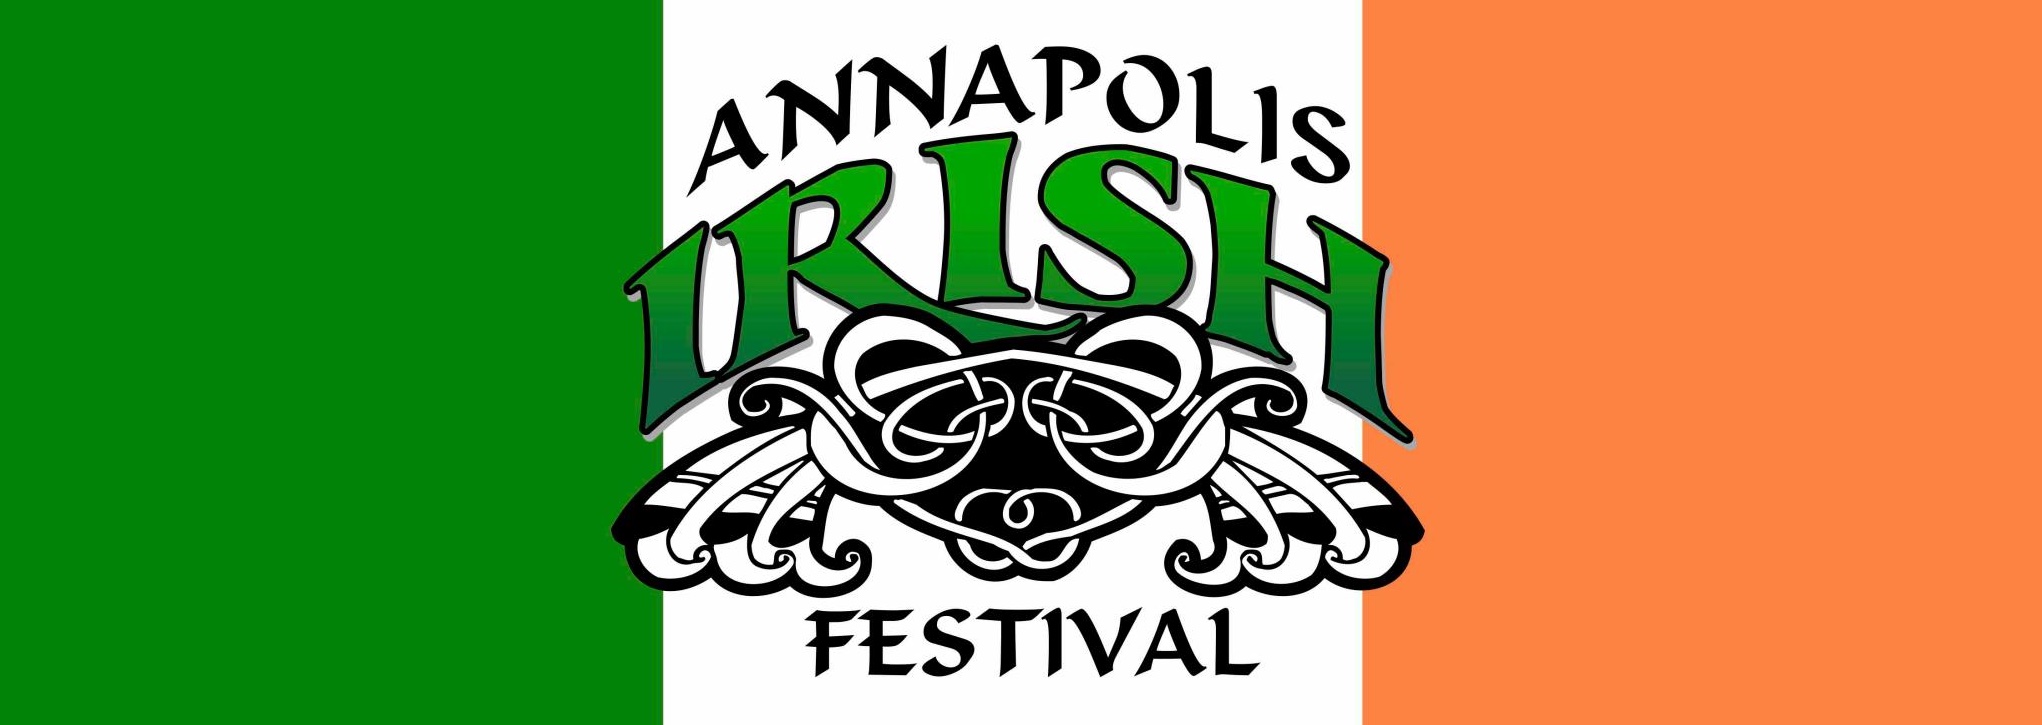 Annapolis Irish Festival